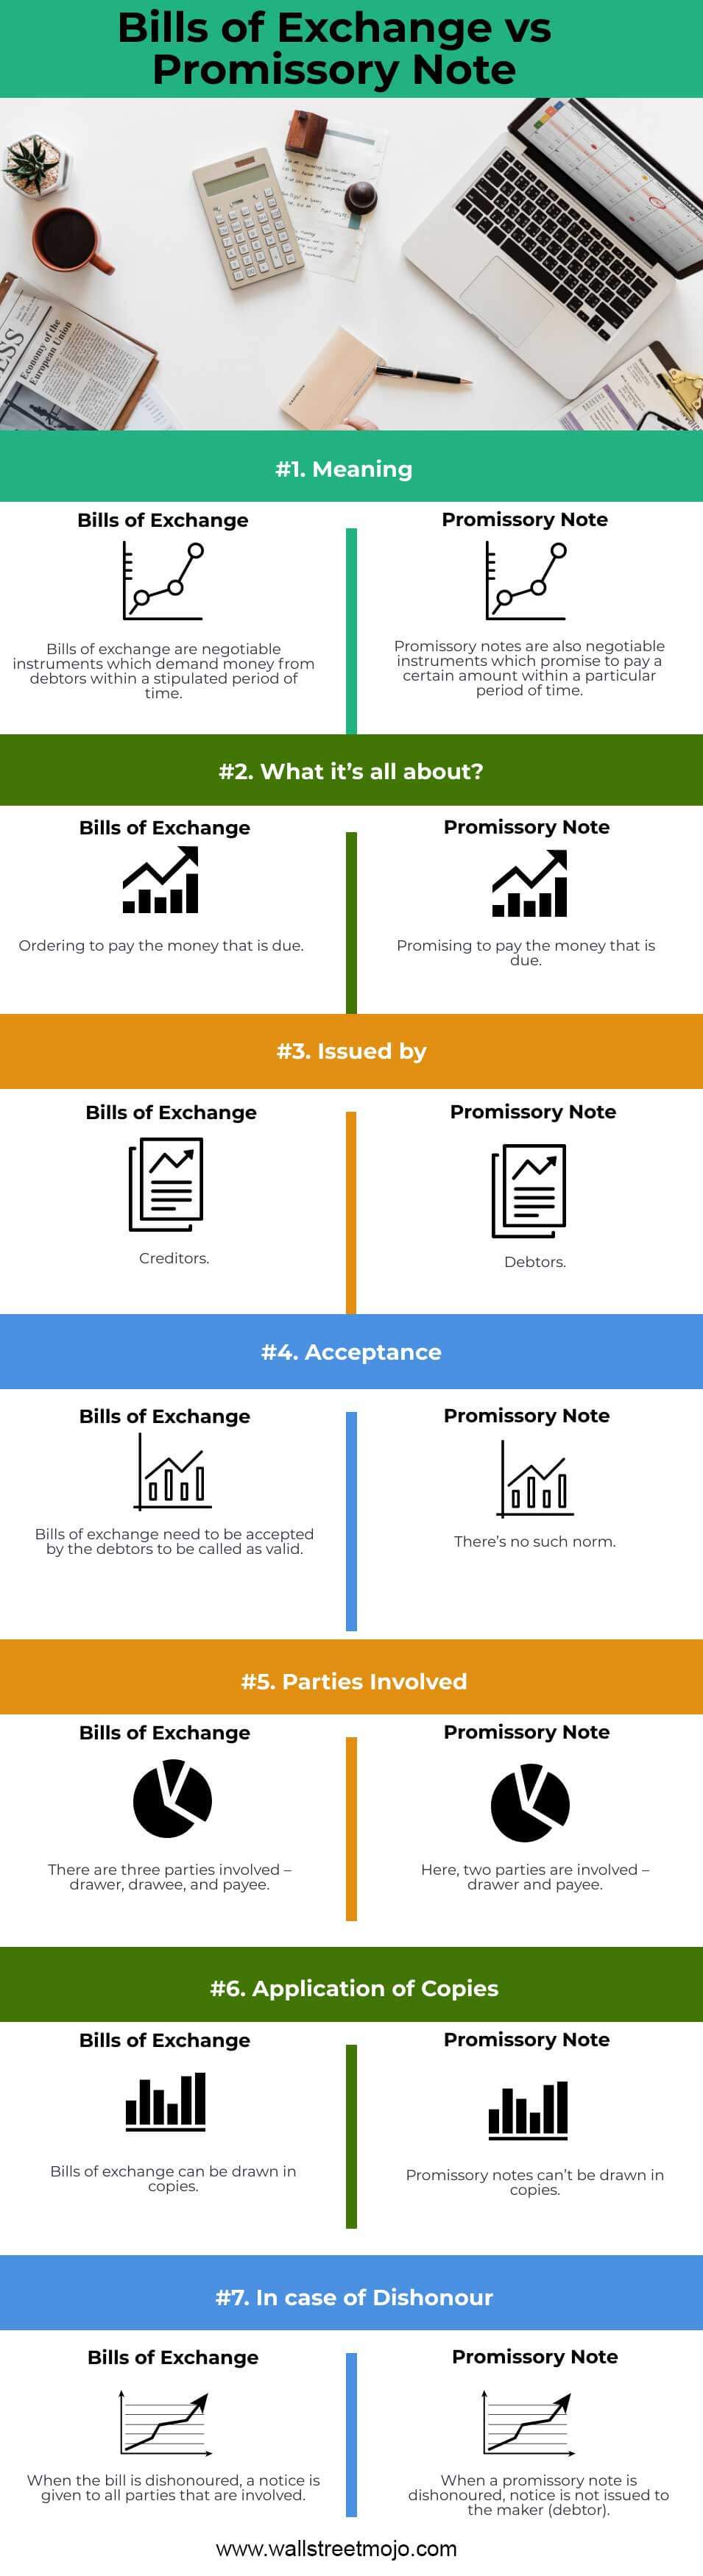 Bills of Exchange vs Promissory Note info